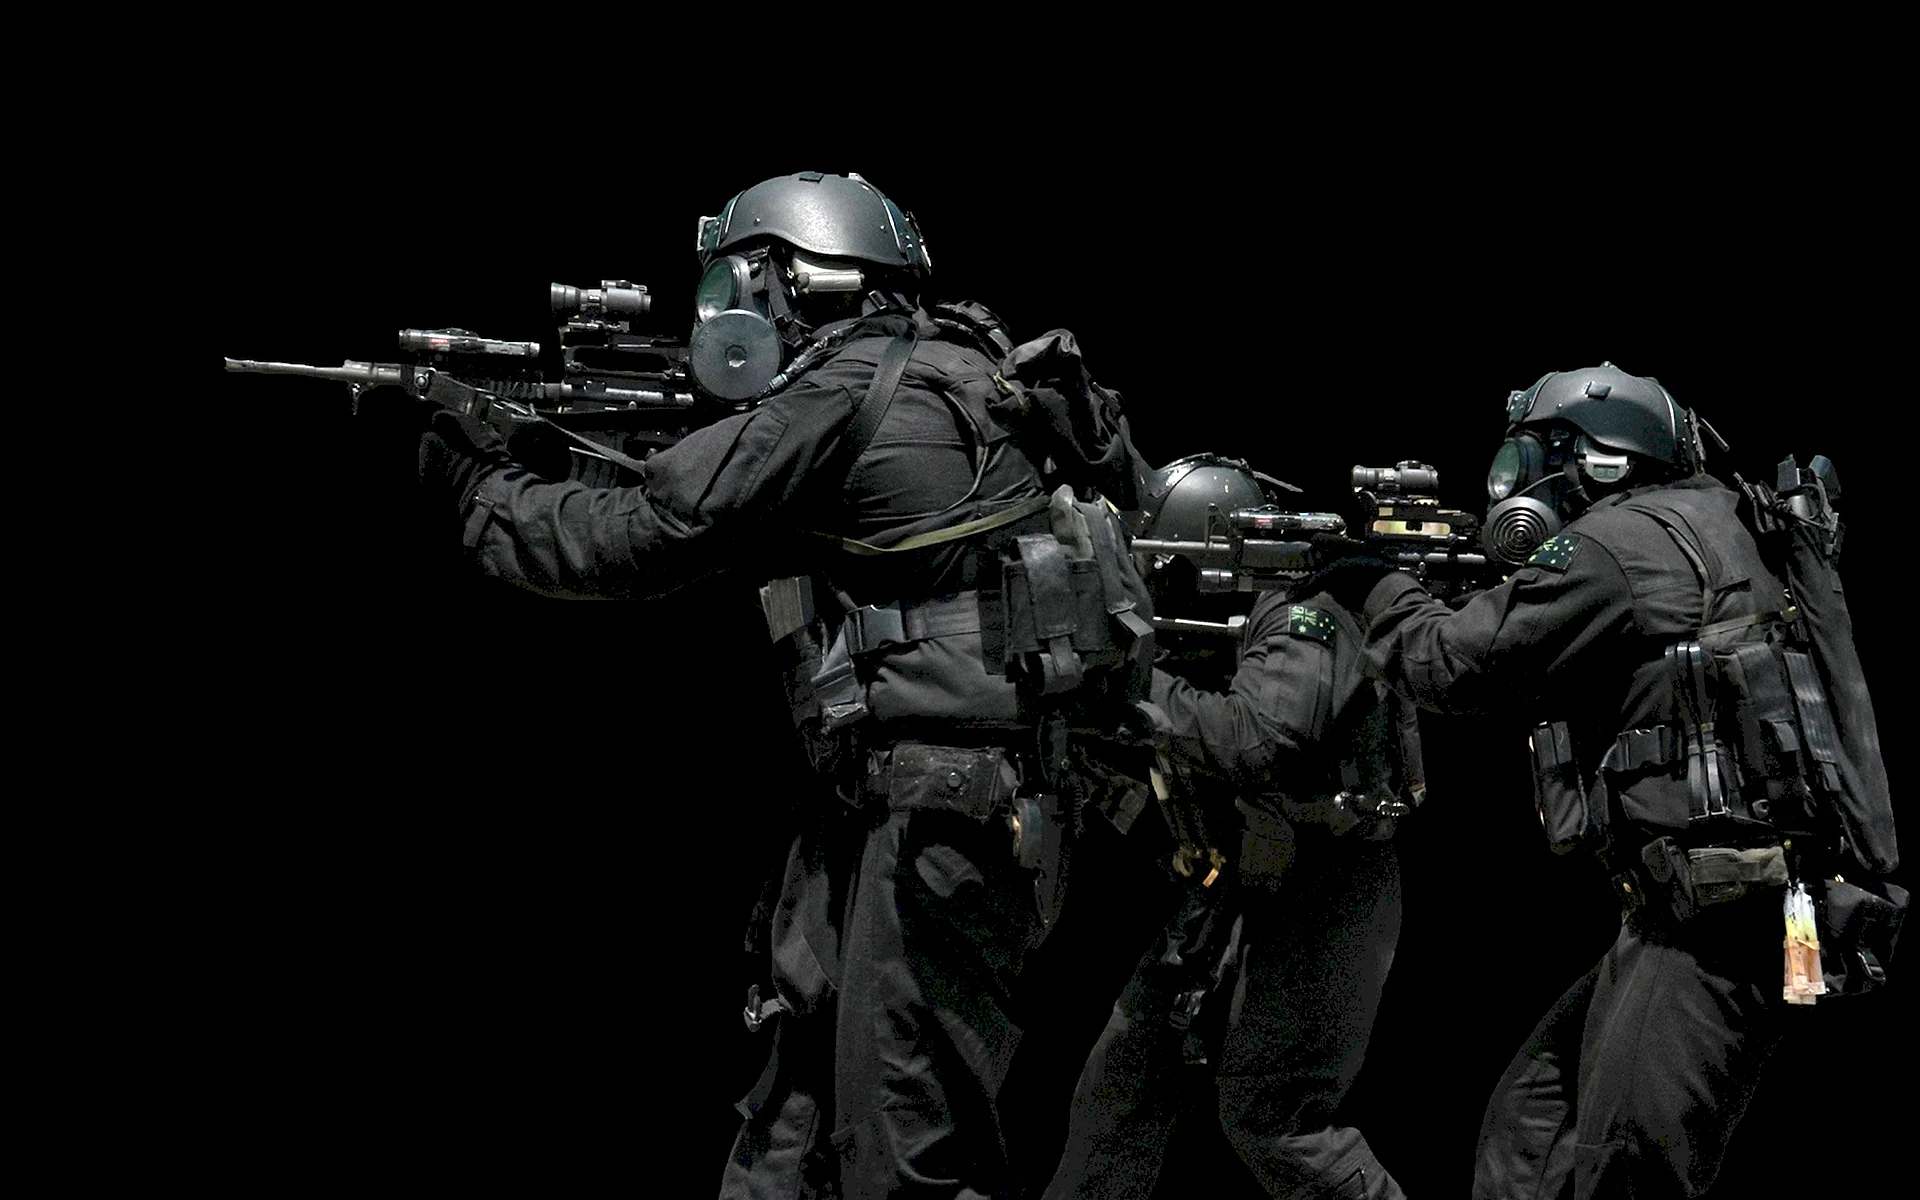 Оперативник | ФБР: SWAT